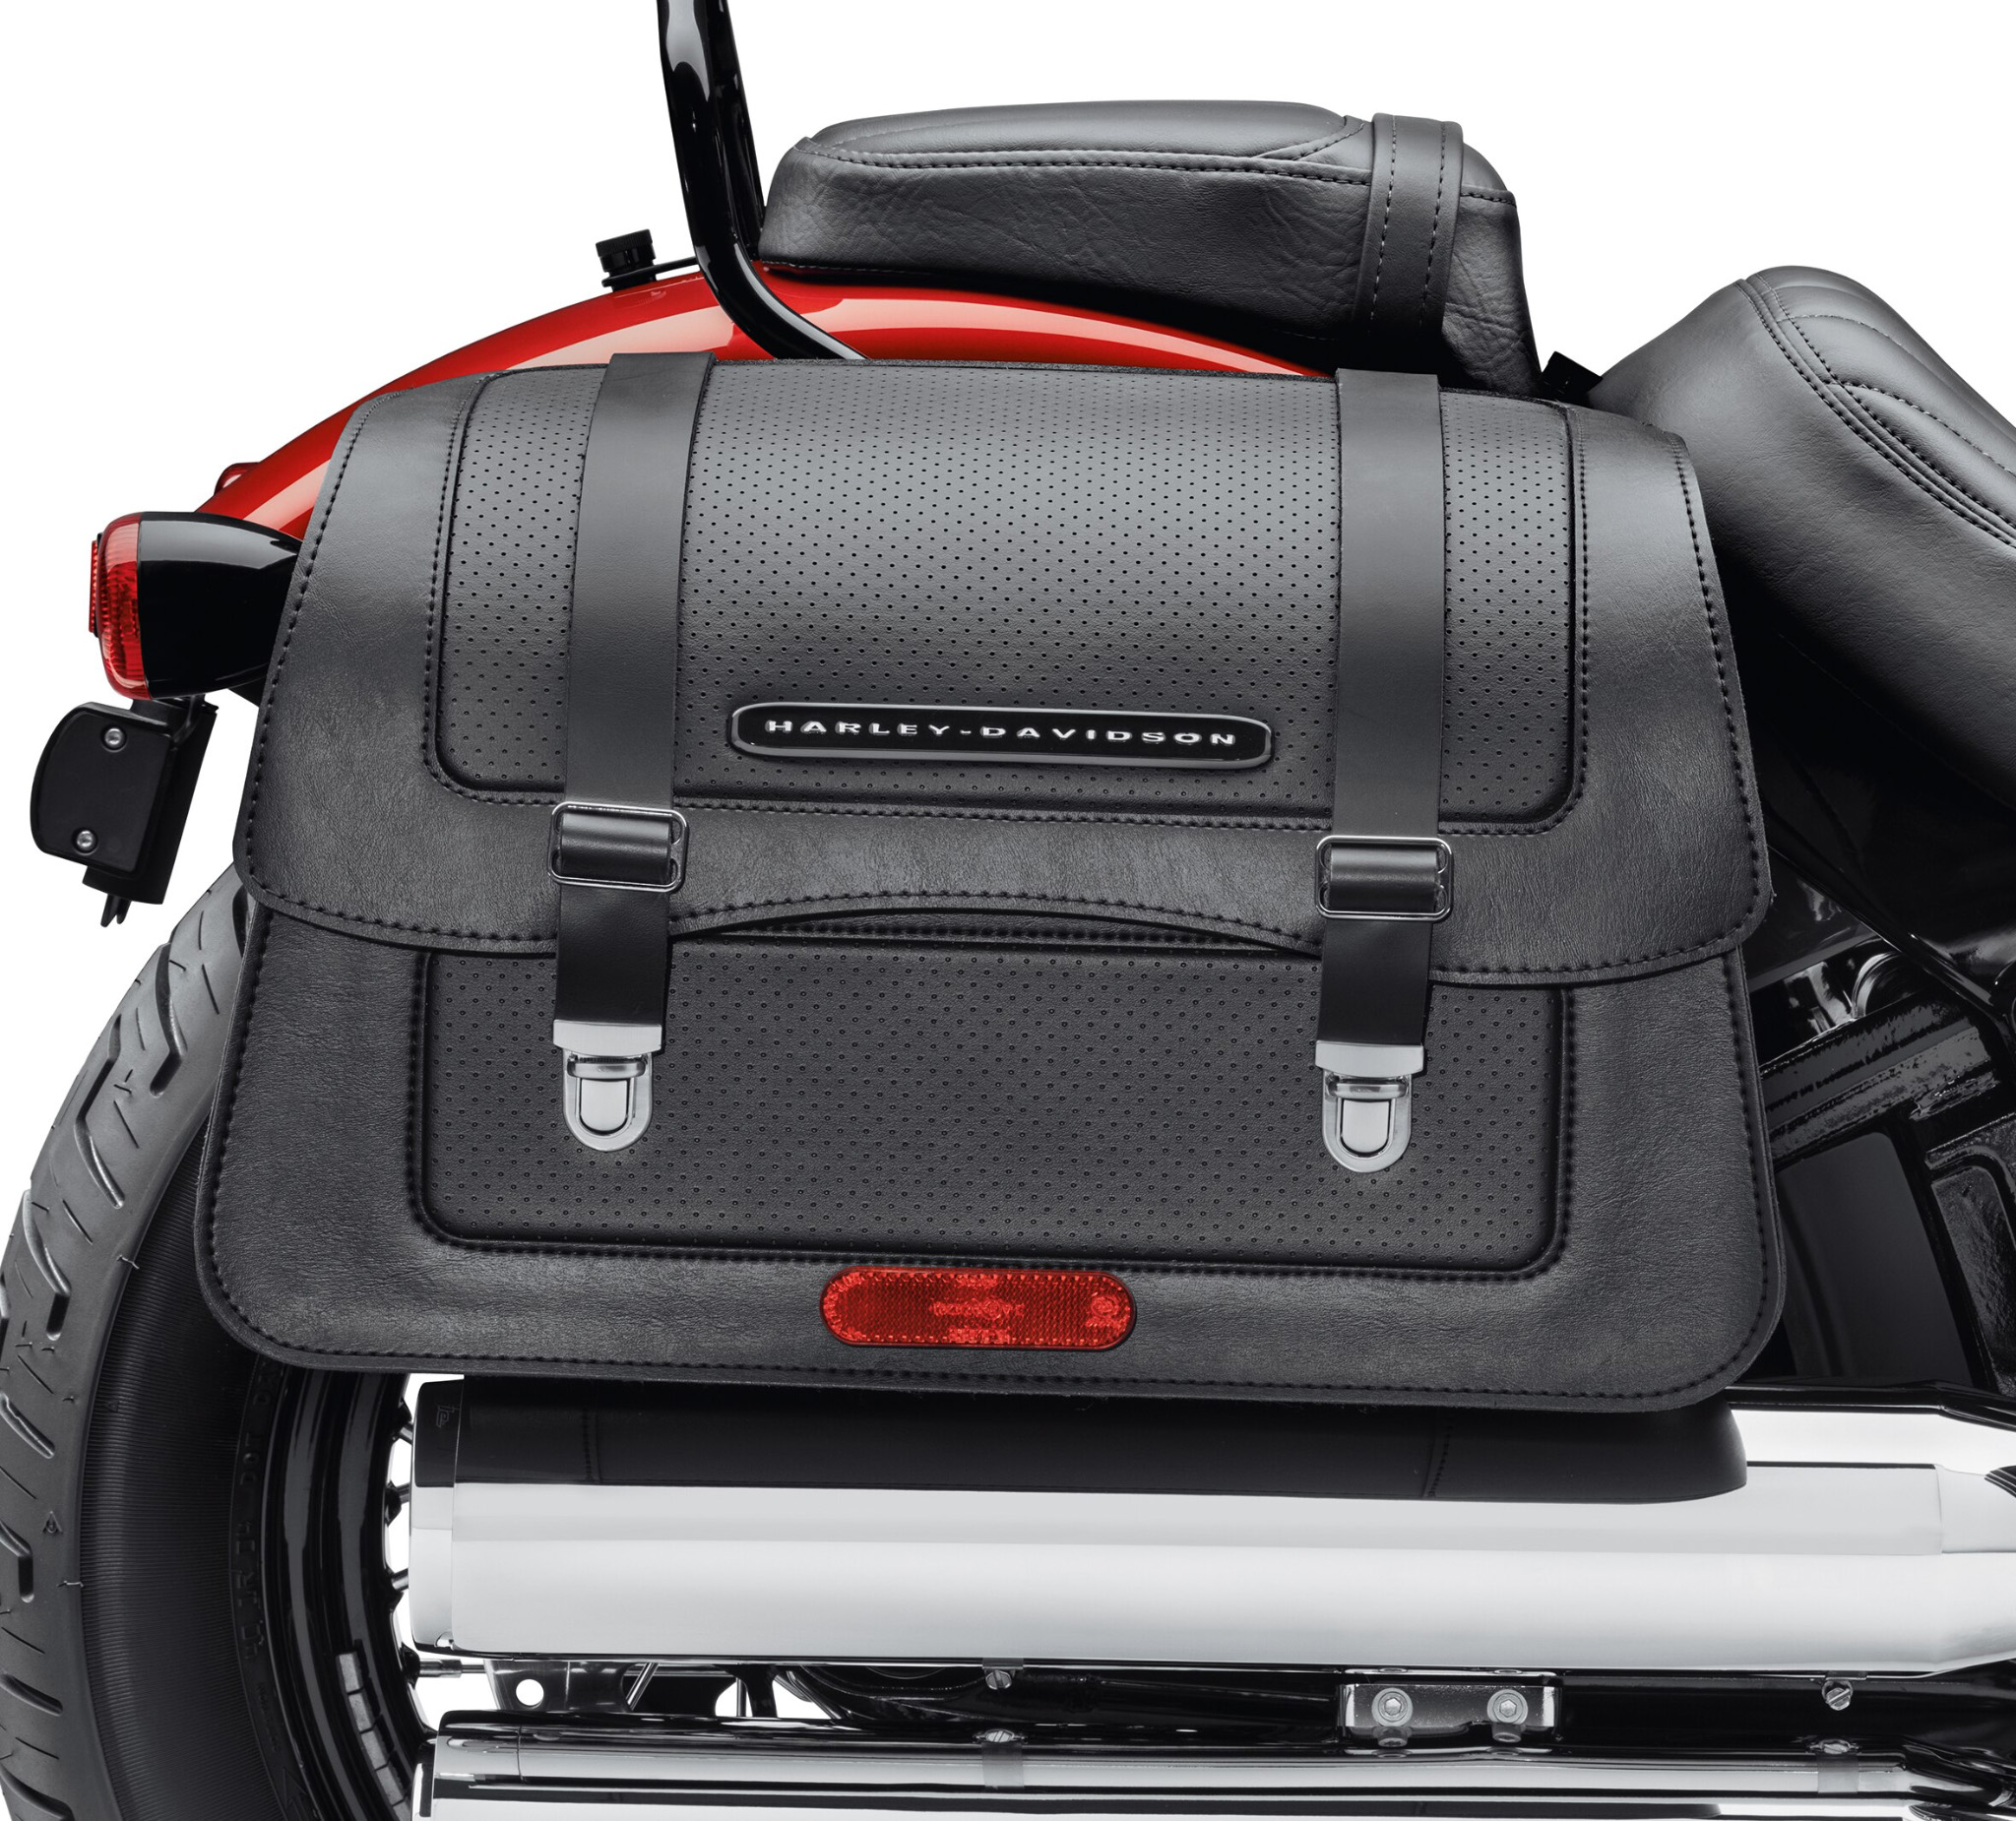 Harley Davidson Purse Shoulder Bag Genuine Black Leather Hard